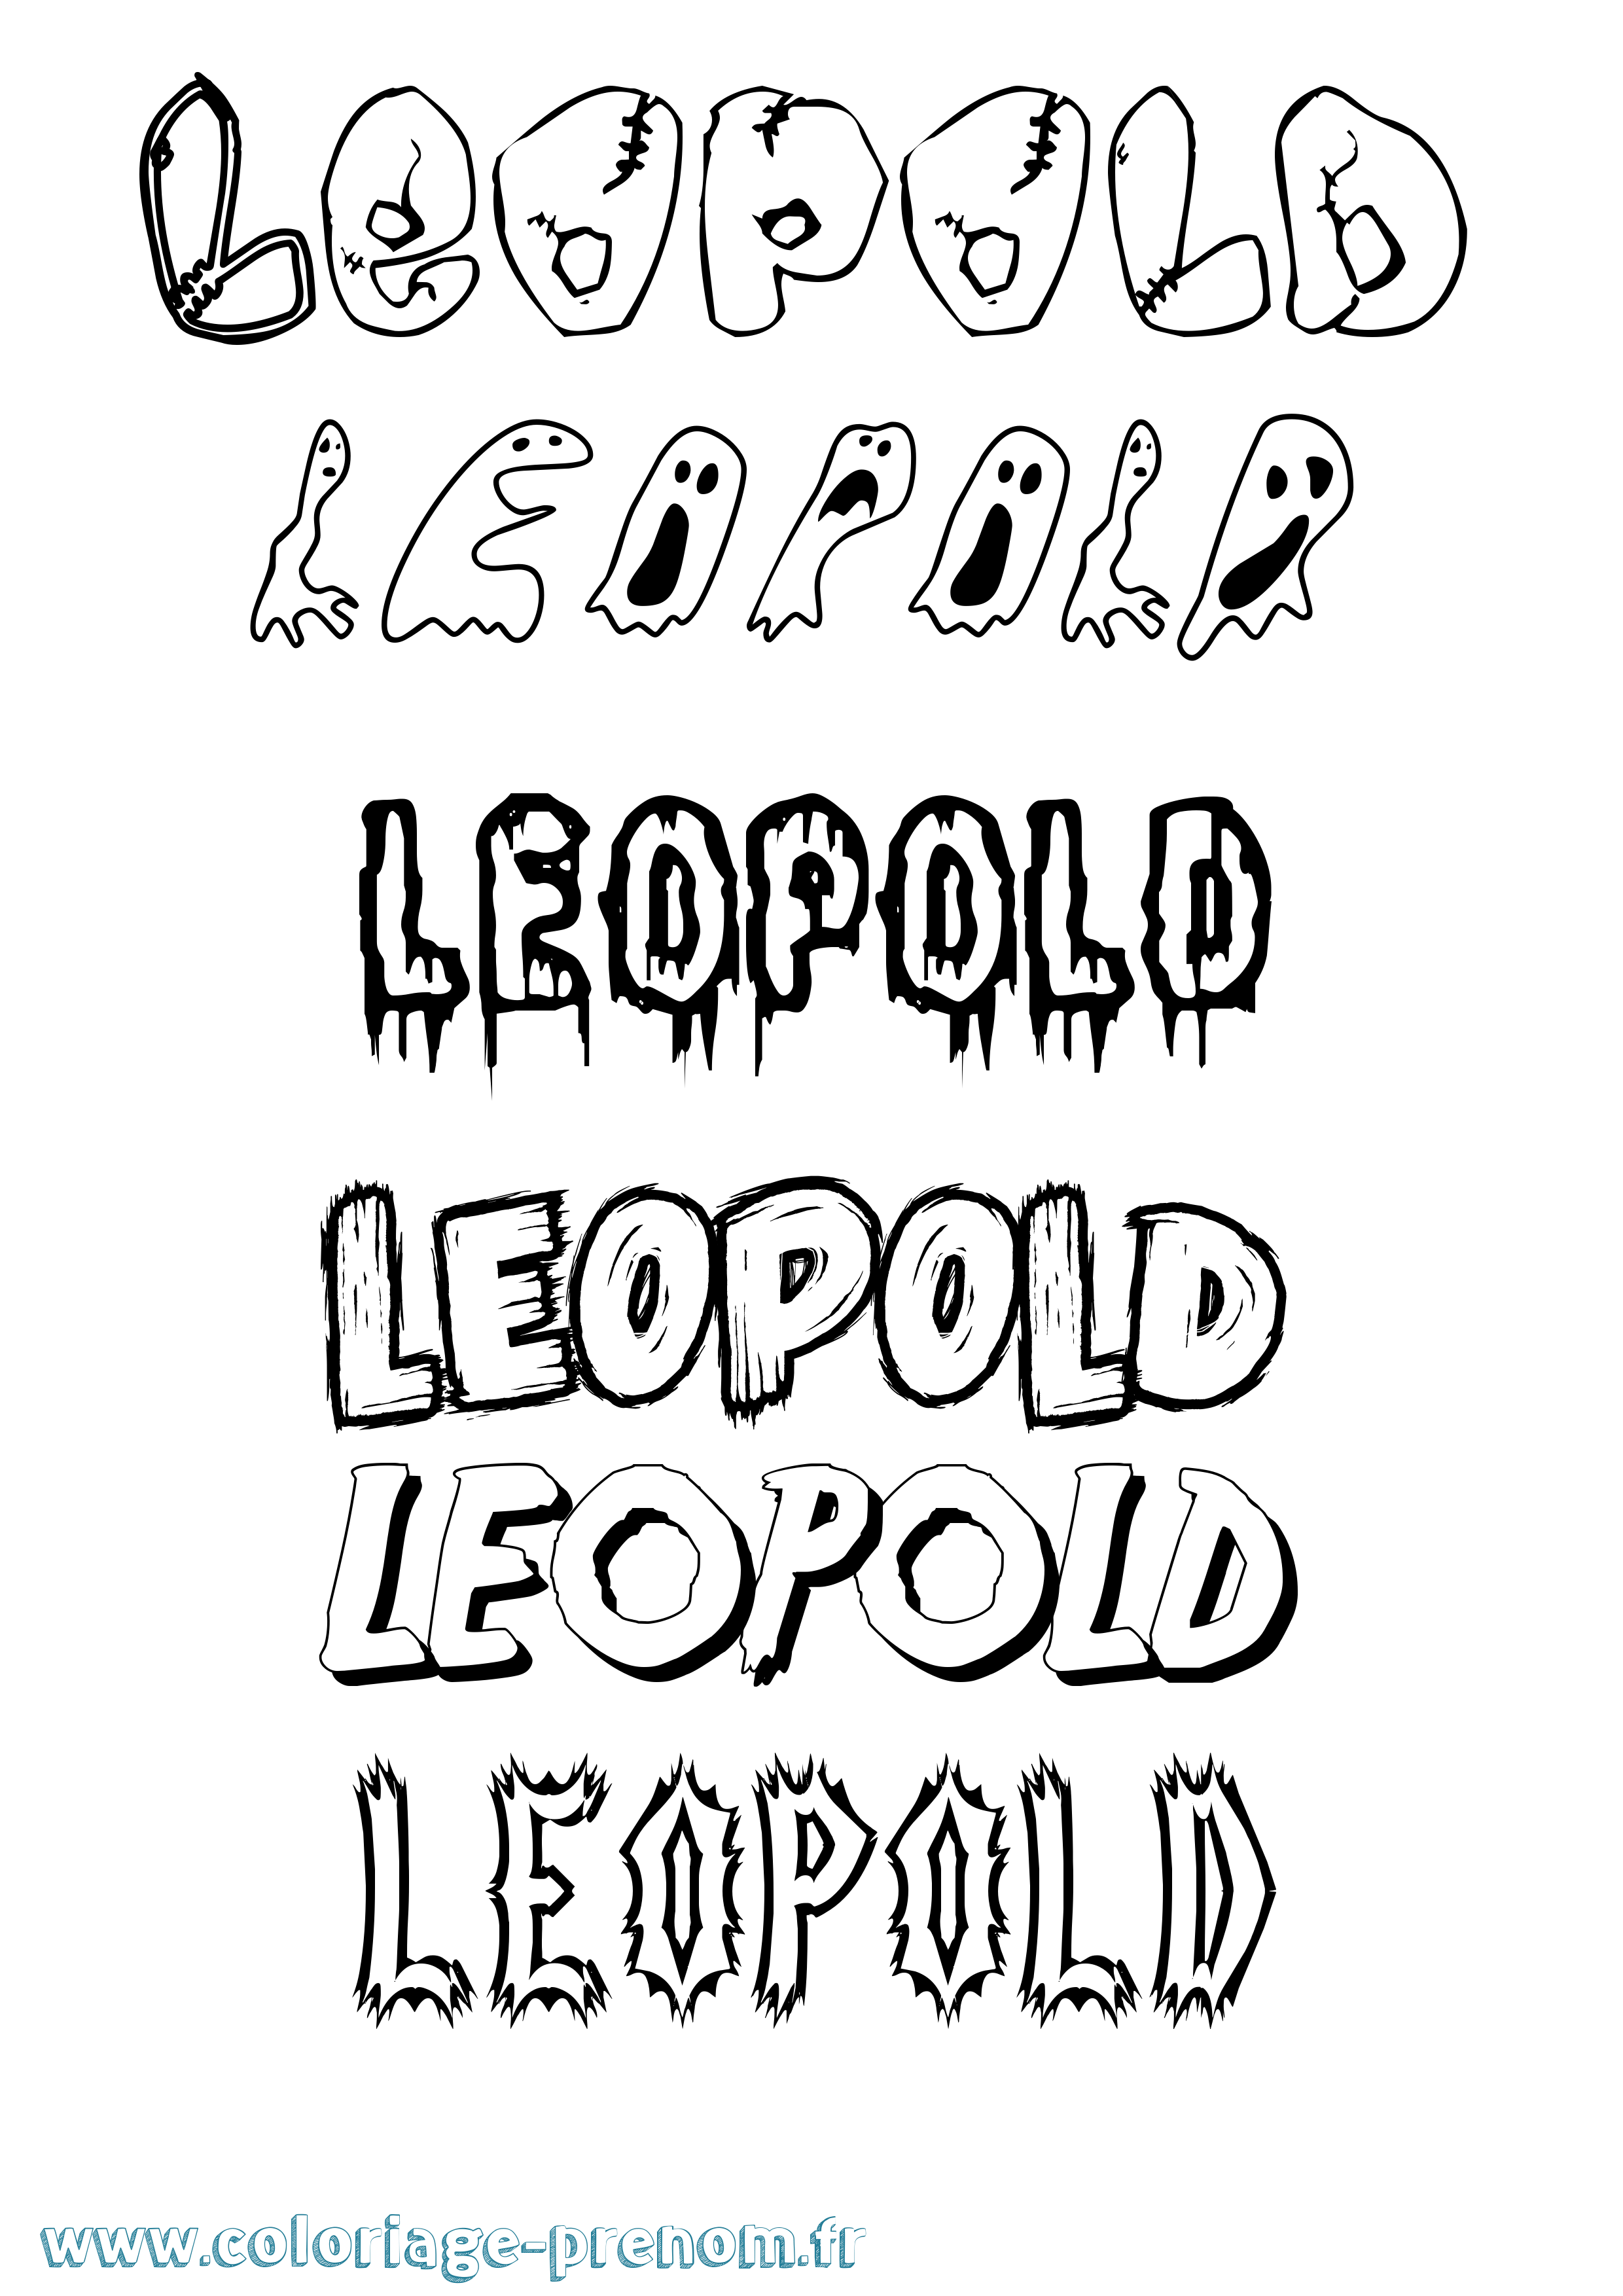 Coloriage prénom Leopold